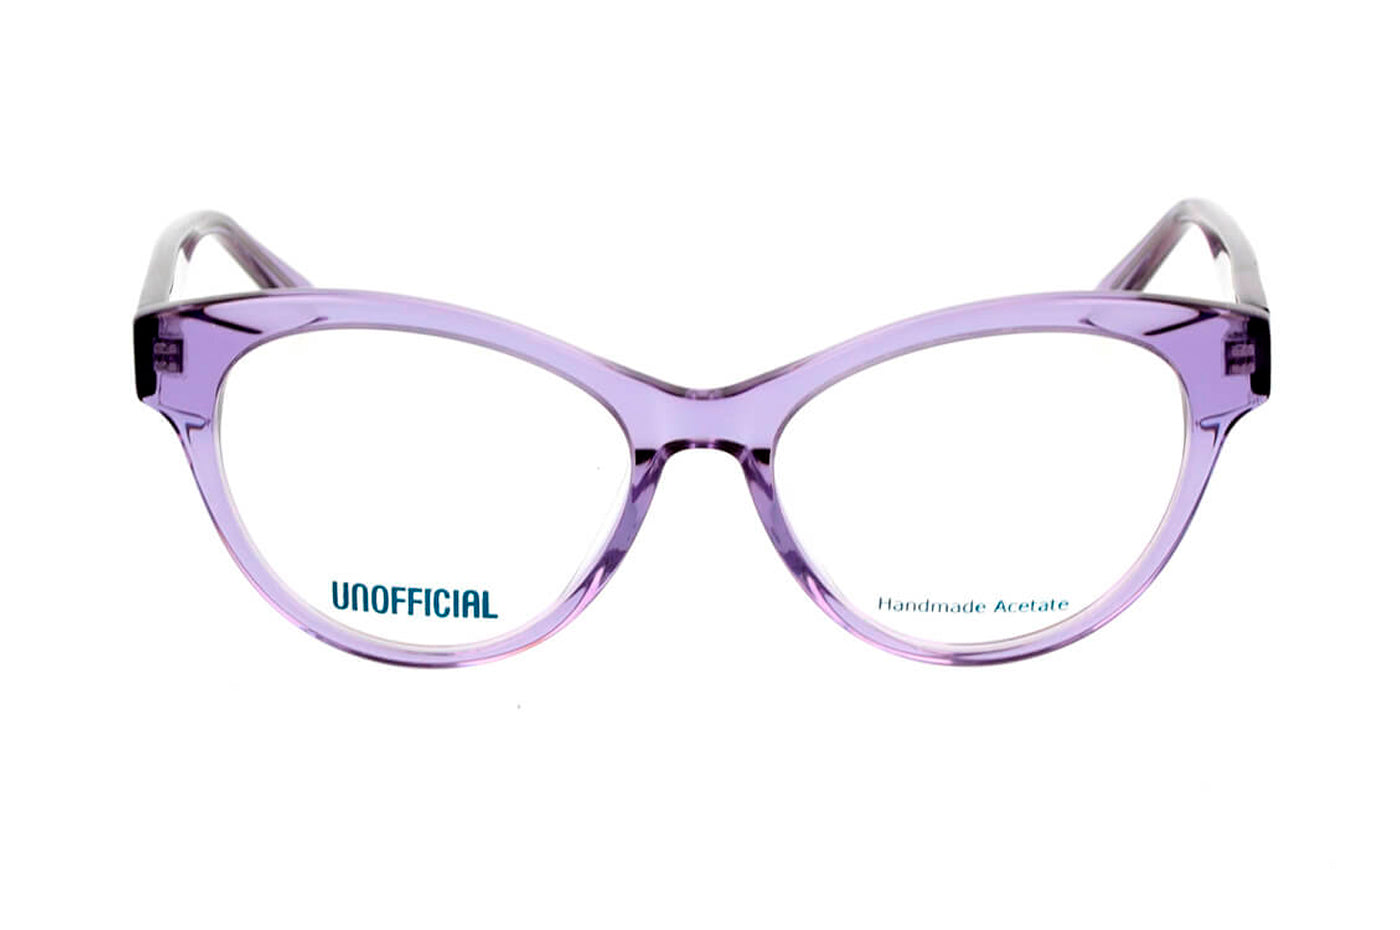 Vista-1 - Gafas oftálmicas Unofficial UNOF0315 Mujer Color Violeta